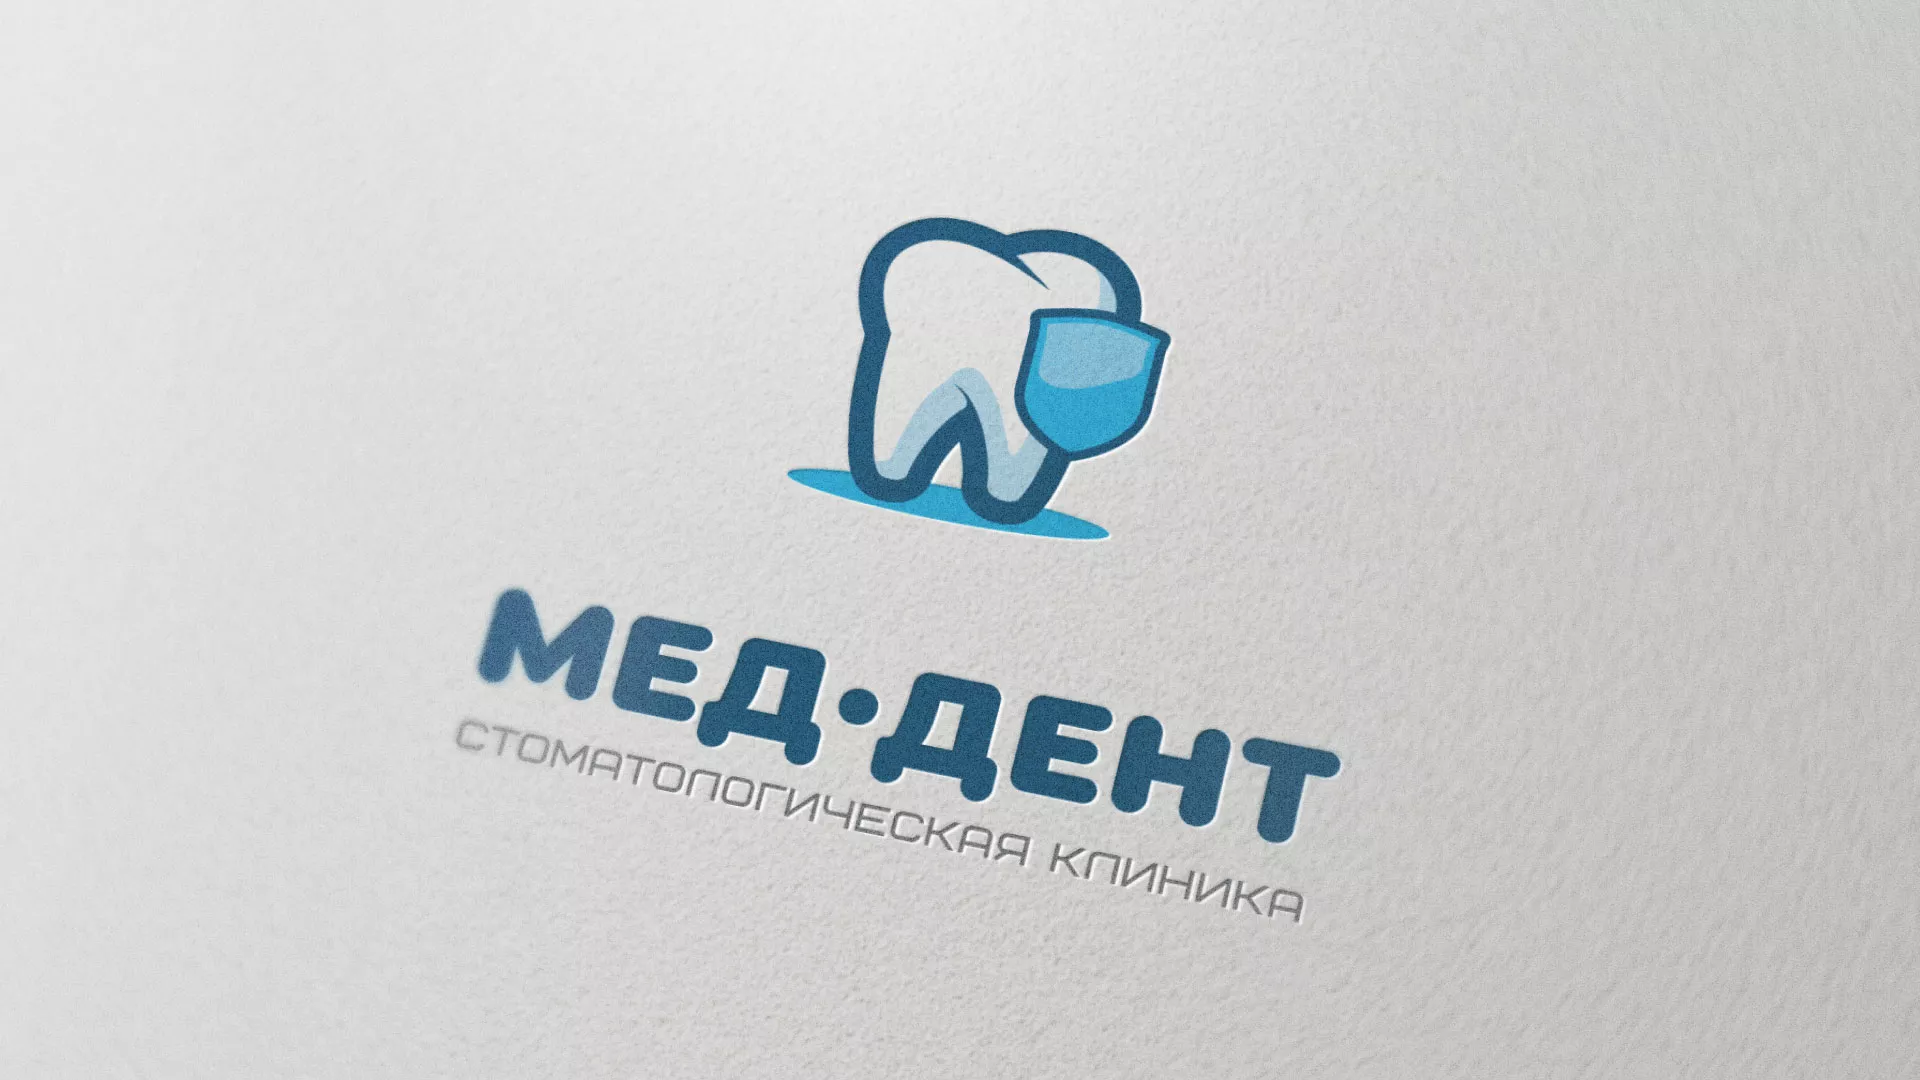 Разработка логотипа стоматологической клиники «МЕД-ДЕНТ» в Юхнове